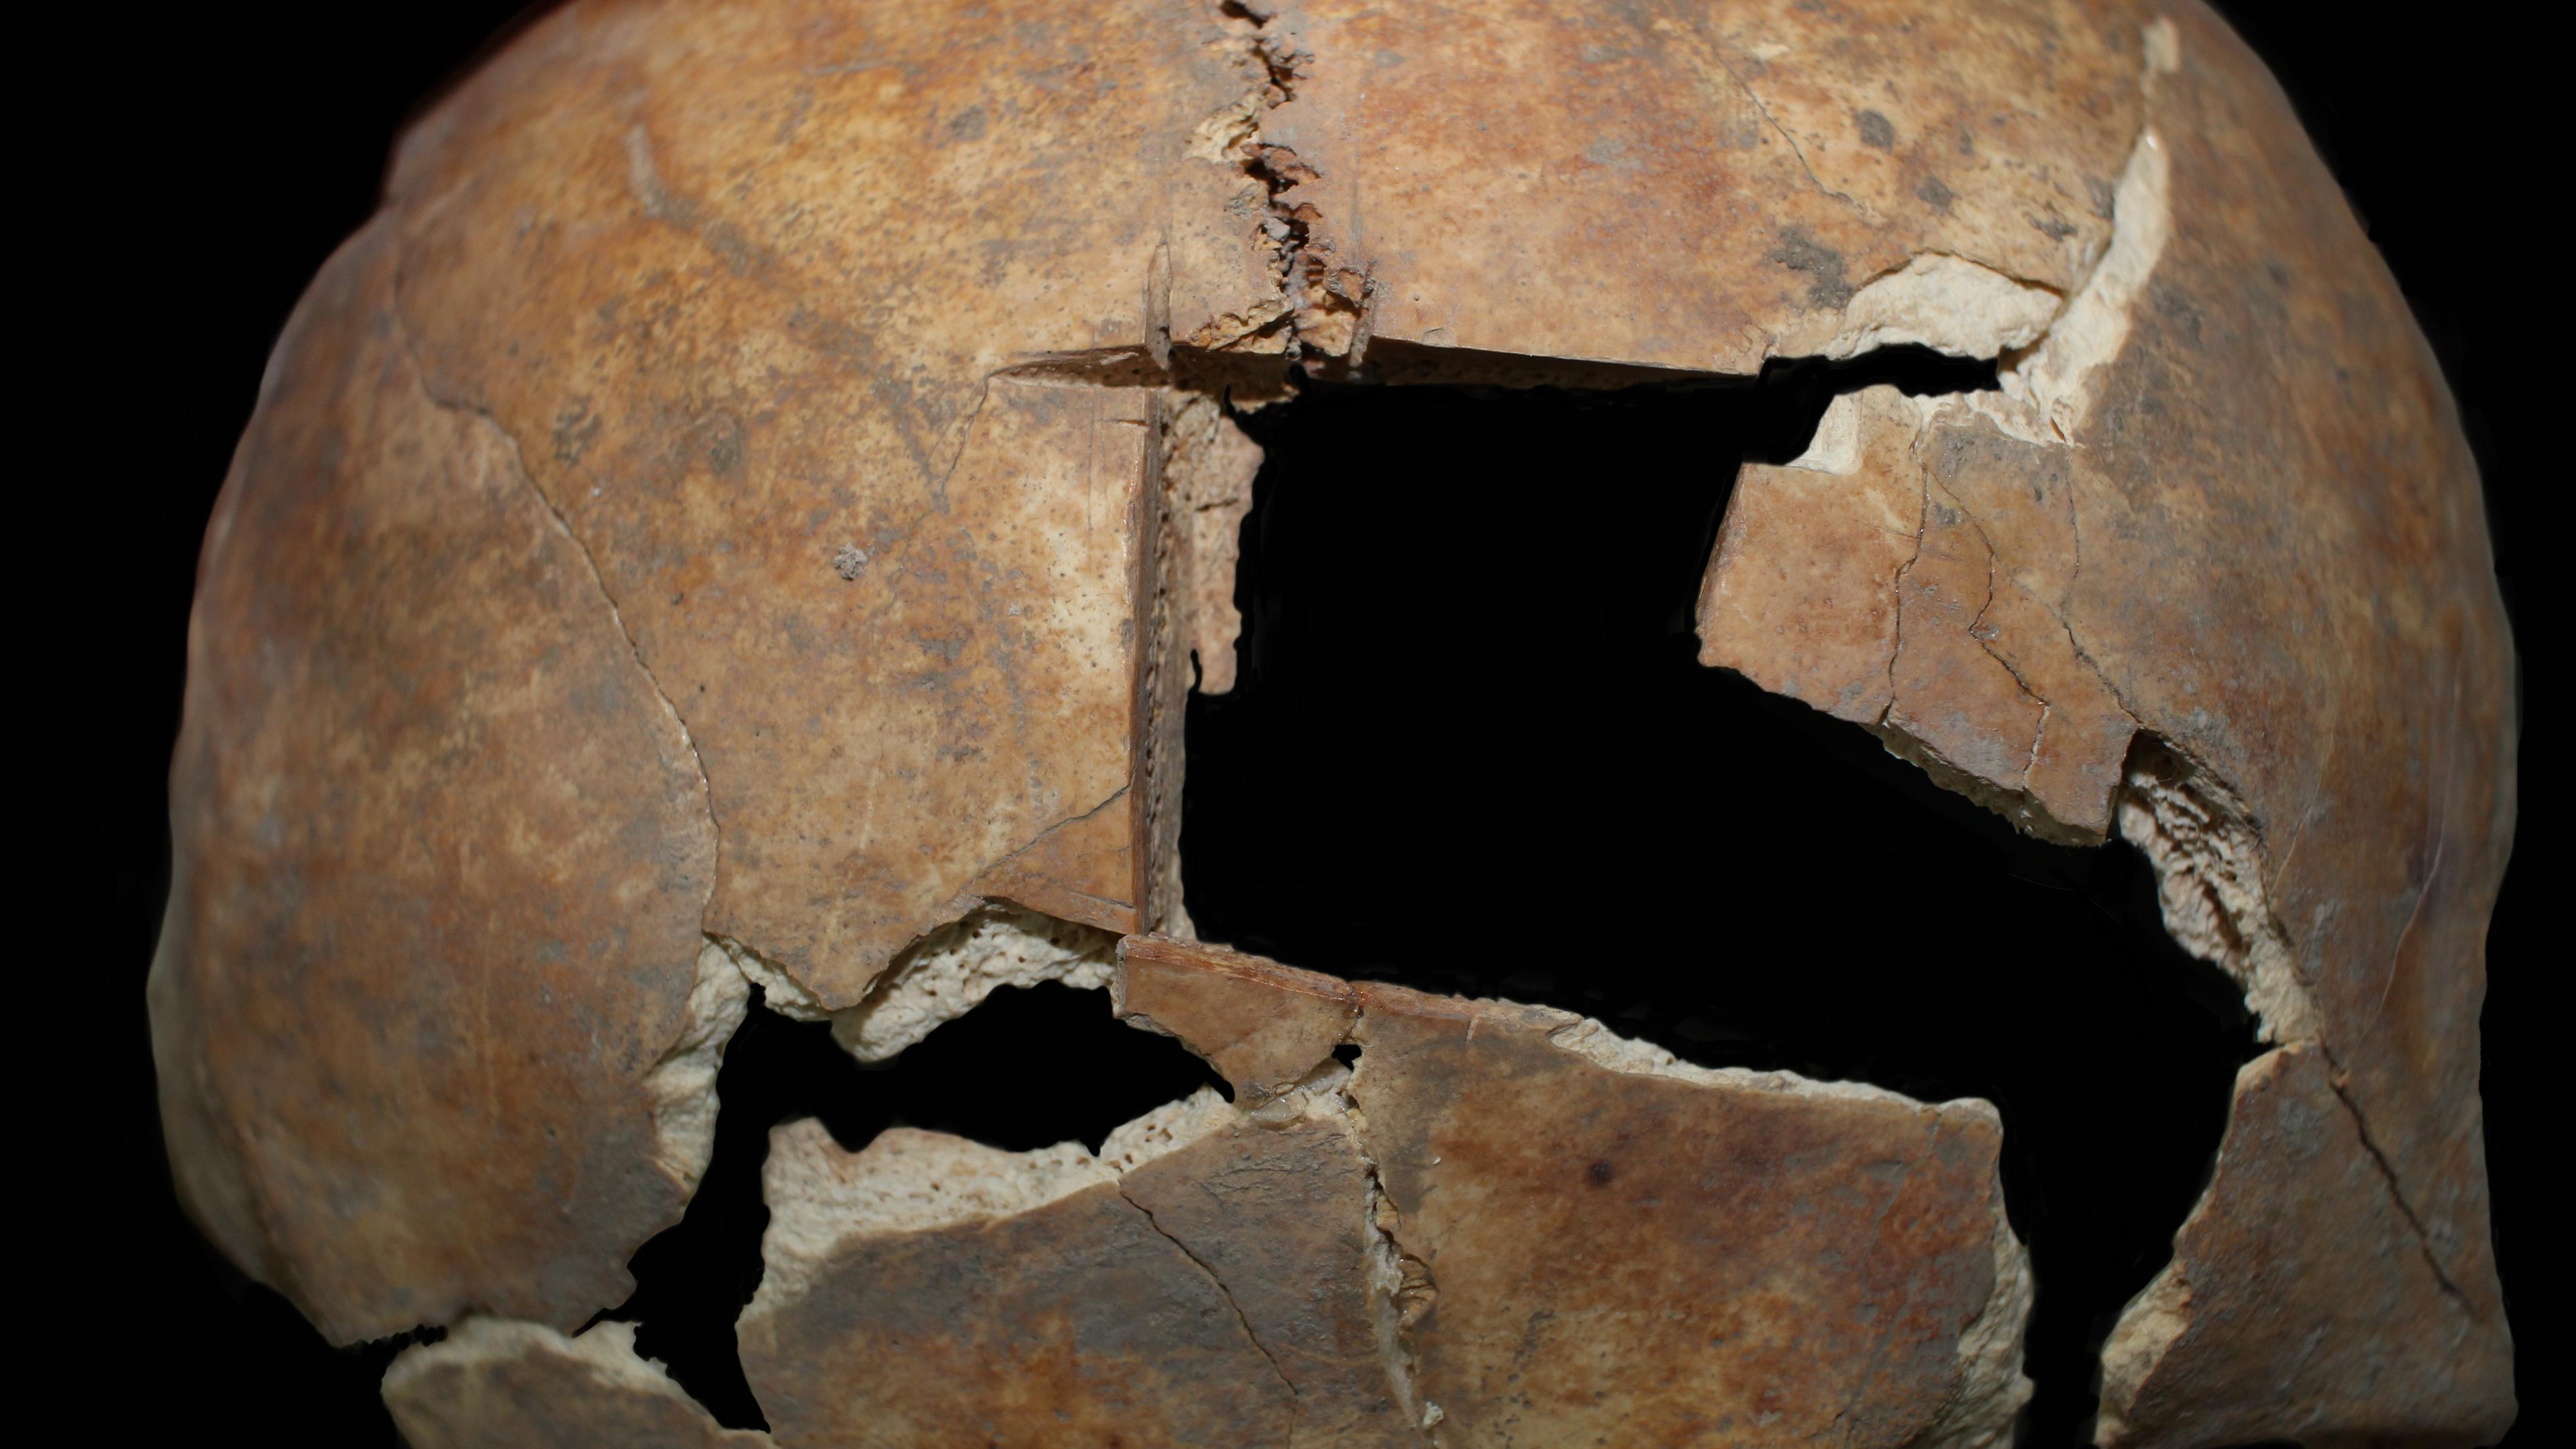 Viereckiges Loch in 3.500 Jahre altem Schädel: Forscher gehen von bronzezeitlicher OP aus